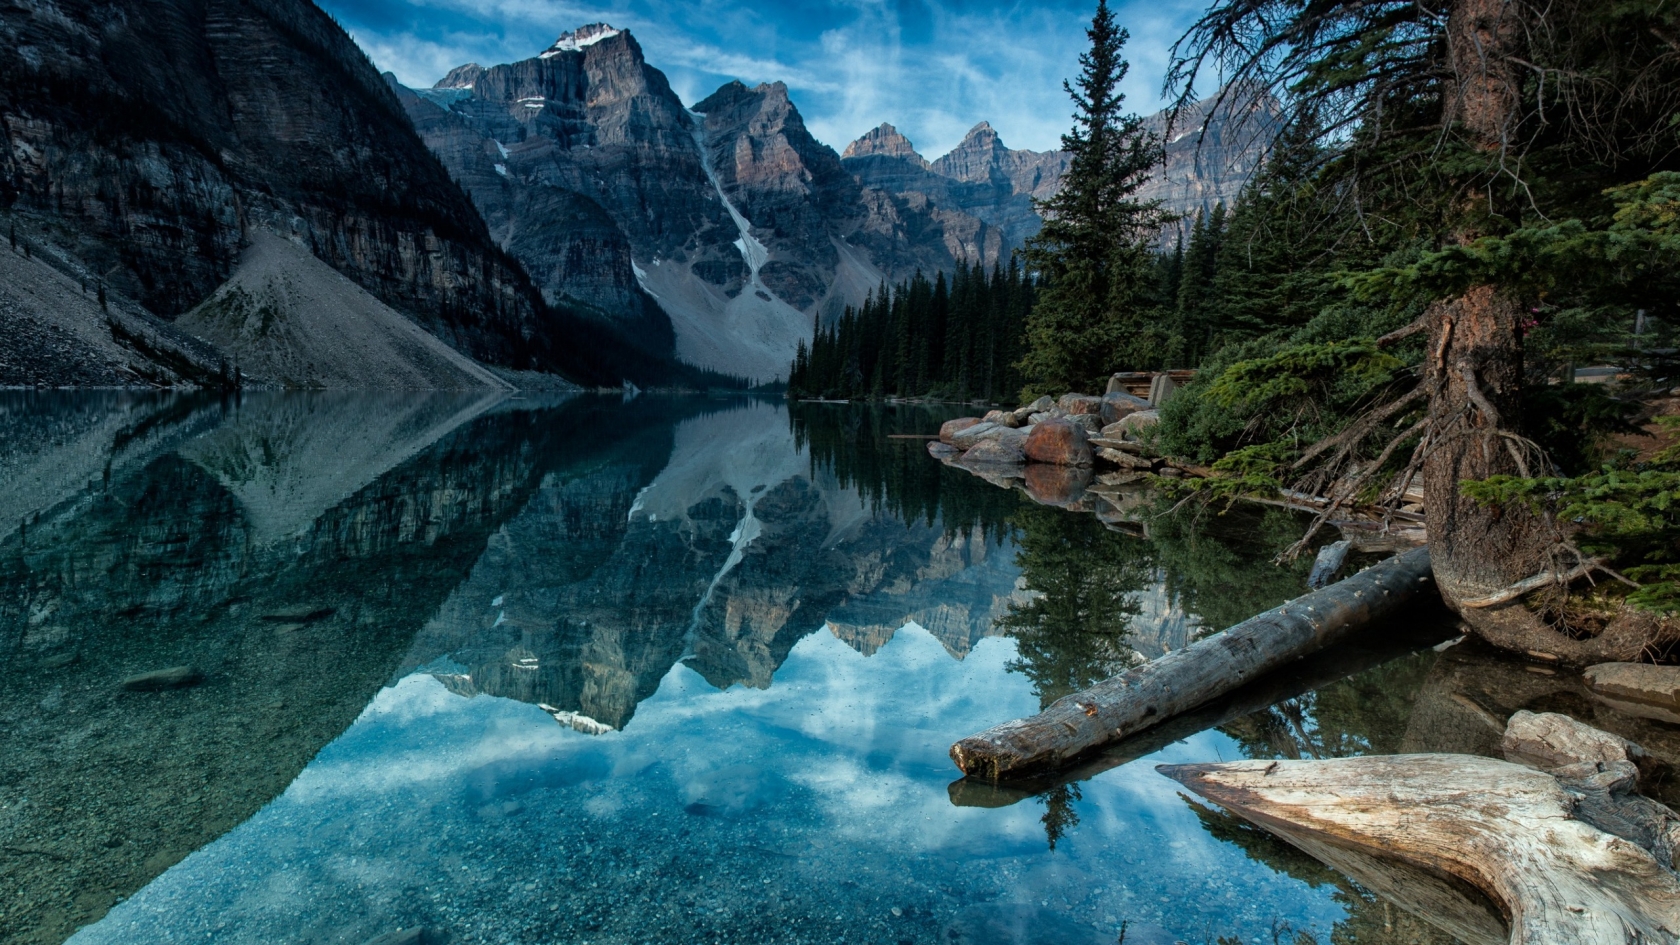 Moraine Lake Alberta Canada for 1680 x 945 HDTV resolution